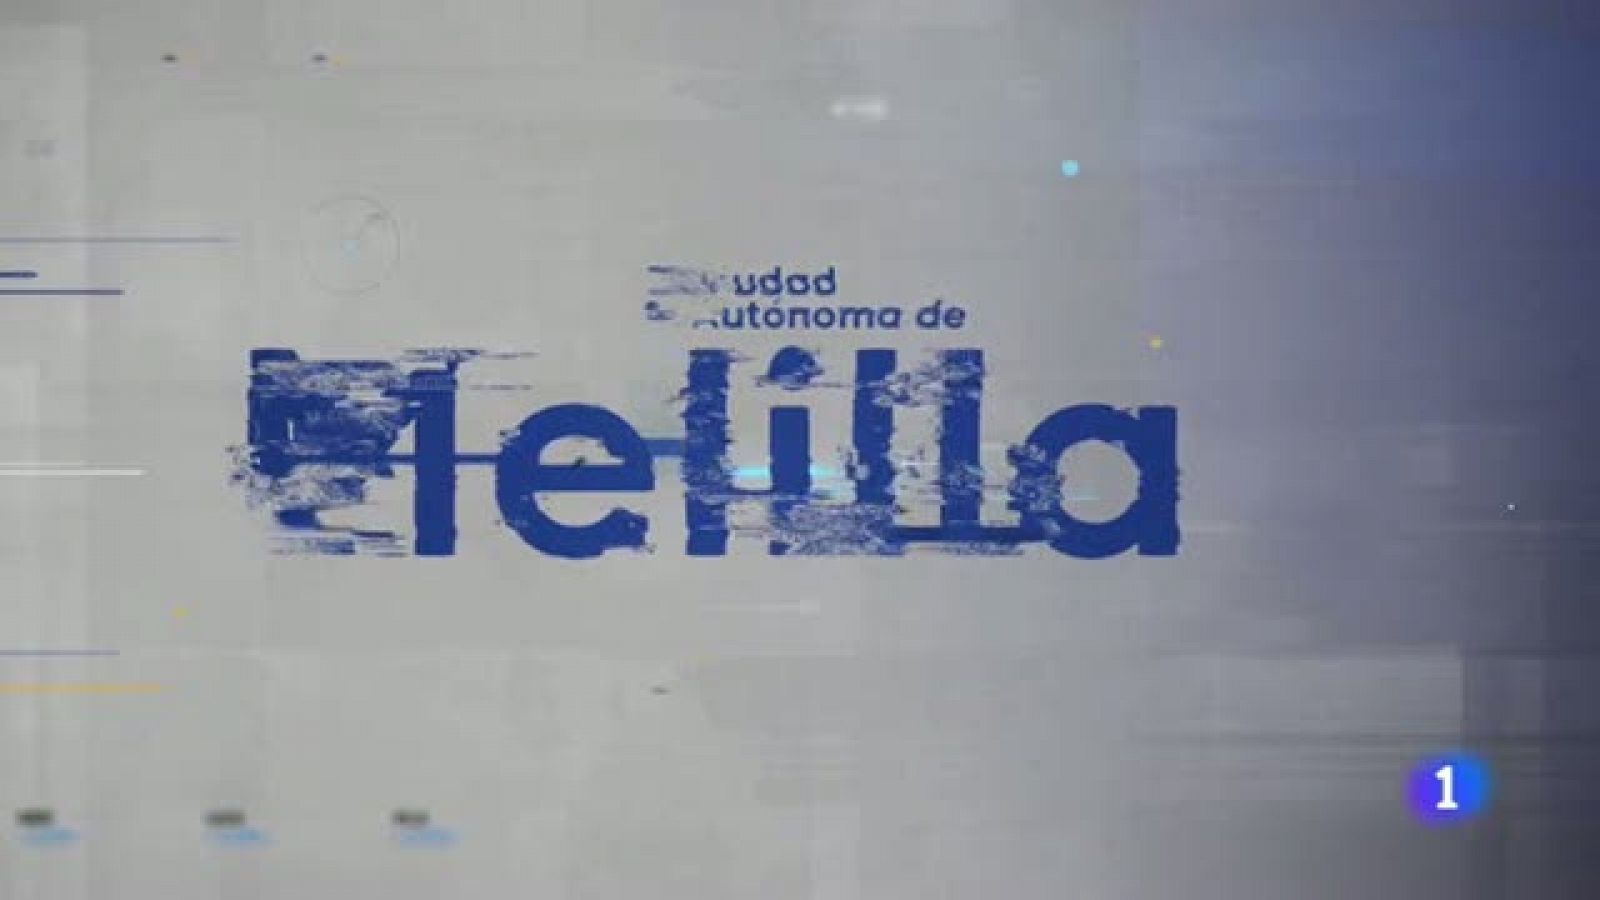 La noticia de Melilla 22/02/2021